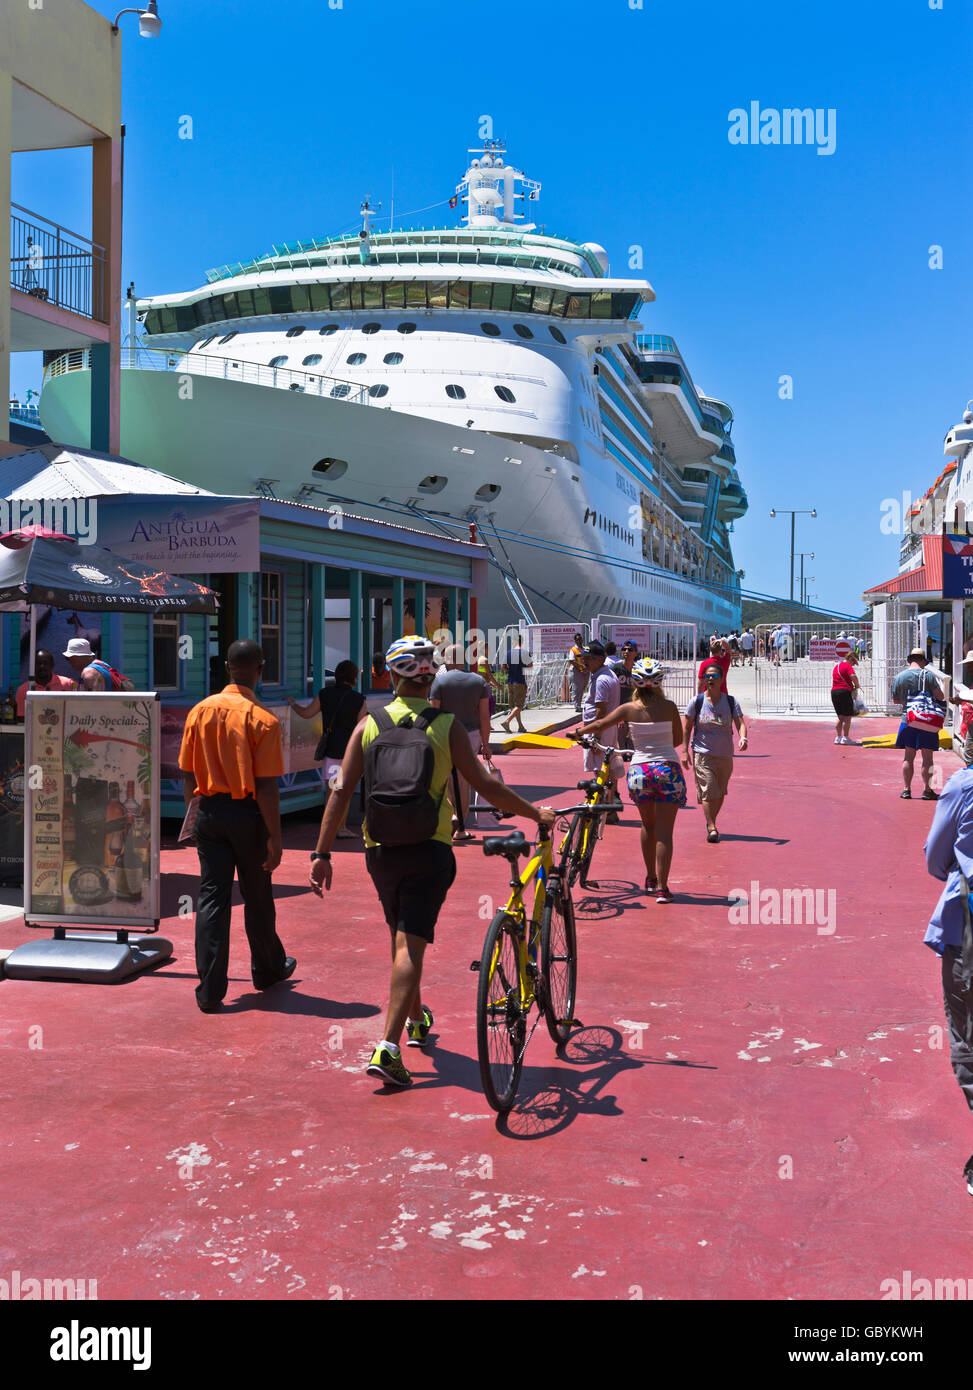 dh St Johns quai du patrimoine Antigua CARAÏBES Tourisme passagers cyclistes bateau de croisière Saint Johns port quai est île personnes barbuda Banque D'Images